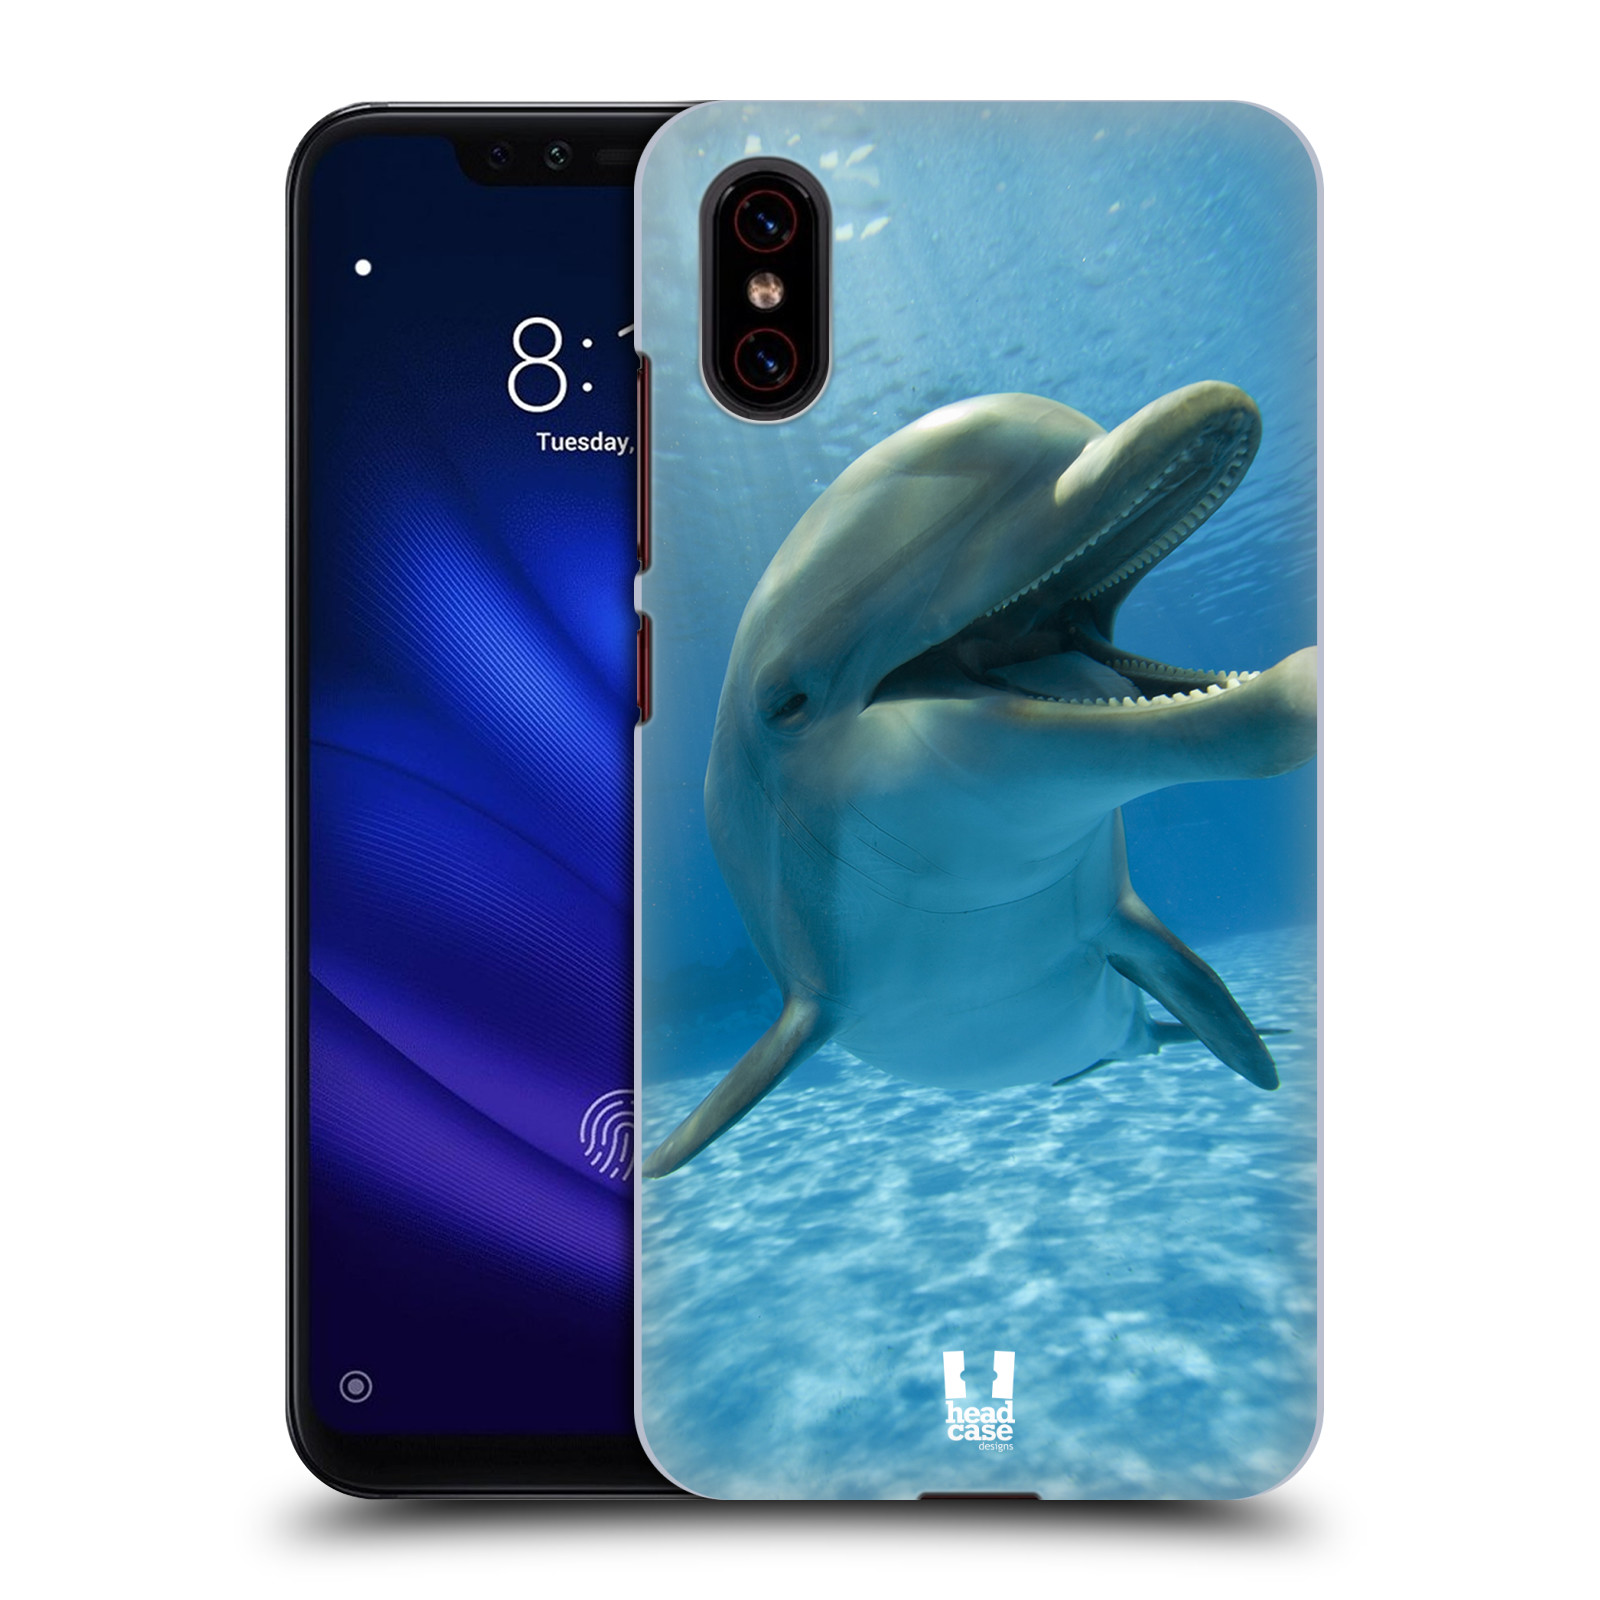 Zadní obal pro mobil Xiaomi Mi 8 PRO - HEAD CASE - Svět zvířat delfín v moři